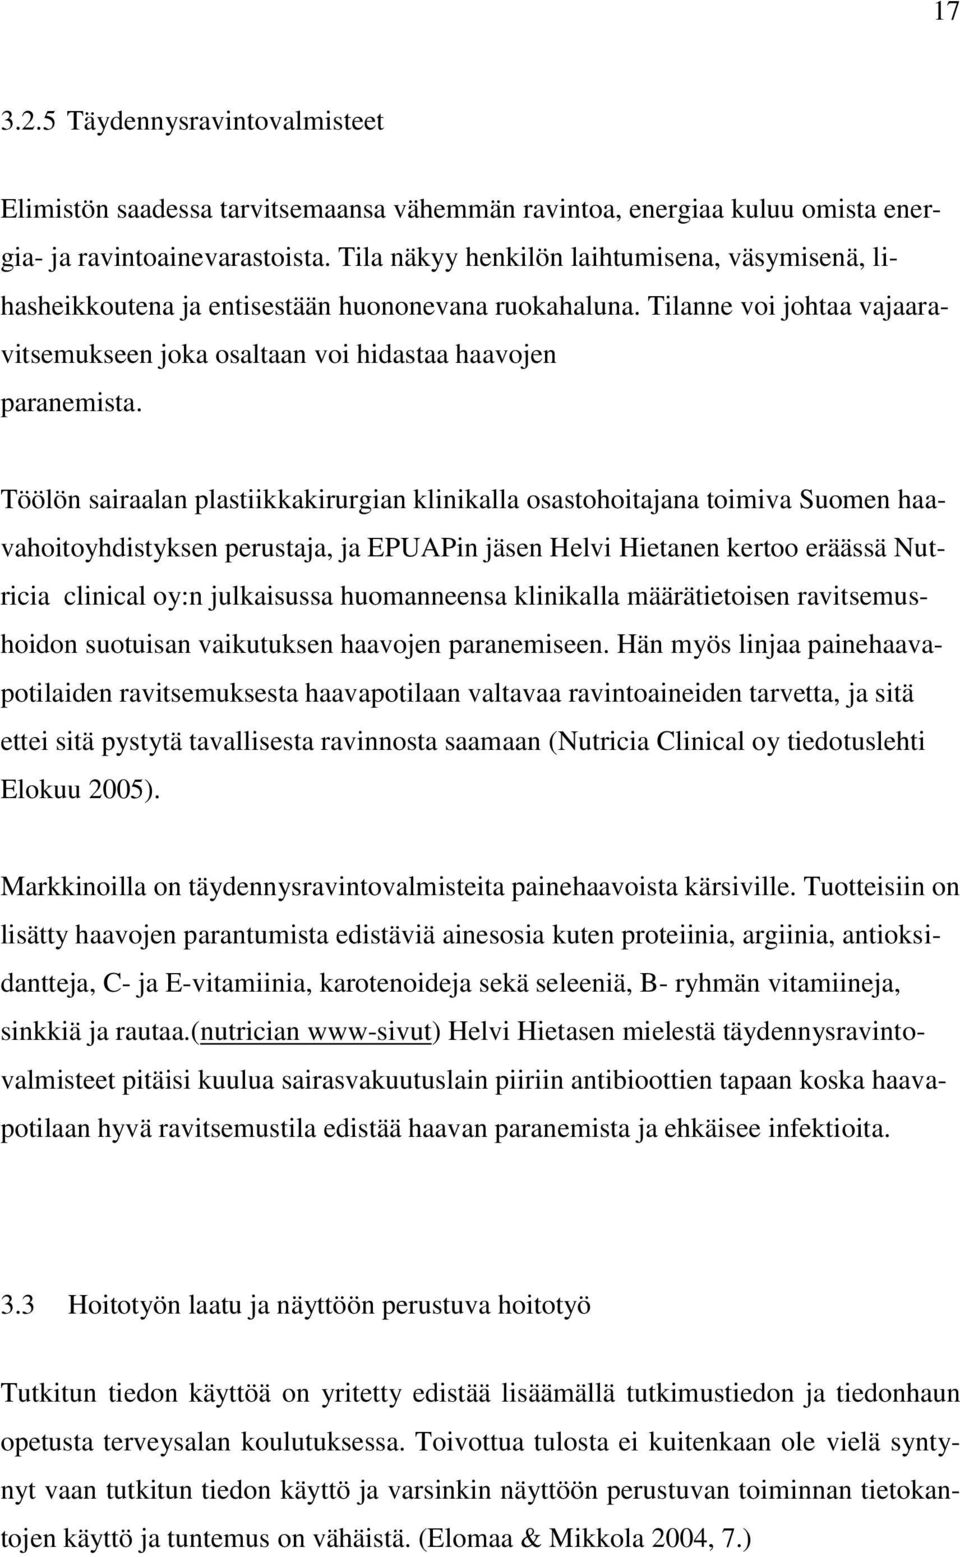 Töölön sairaalan plastiikkakirurgian klinikalla osastohoitajana toimiva Suomen haavahoitoyhdistyksen perustaja, ja EPUAPin jäsen Helvi Hietanen kertoo eräässä Nutricia clinical oy:n julkaisussa